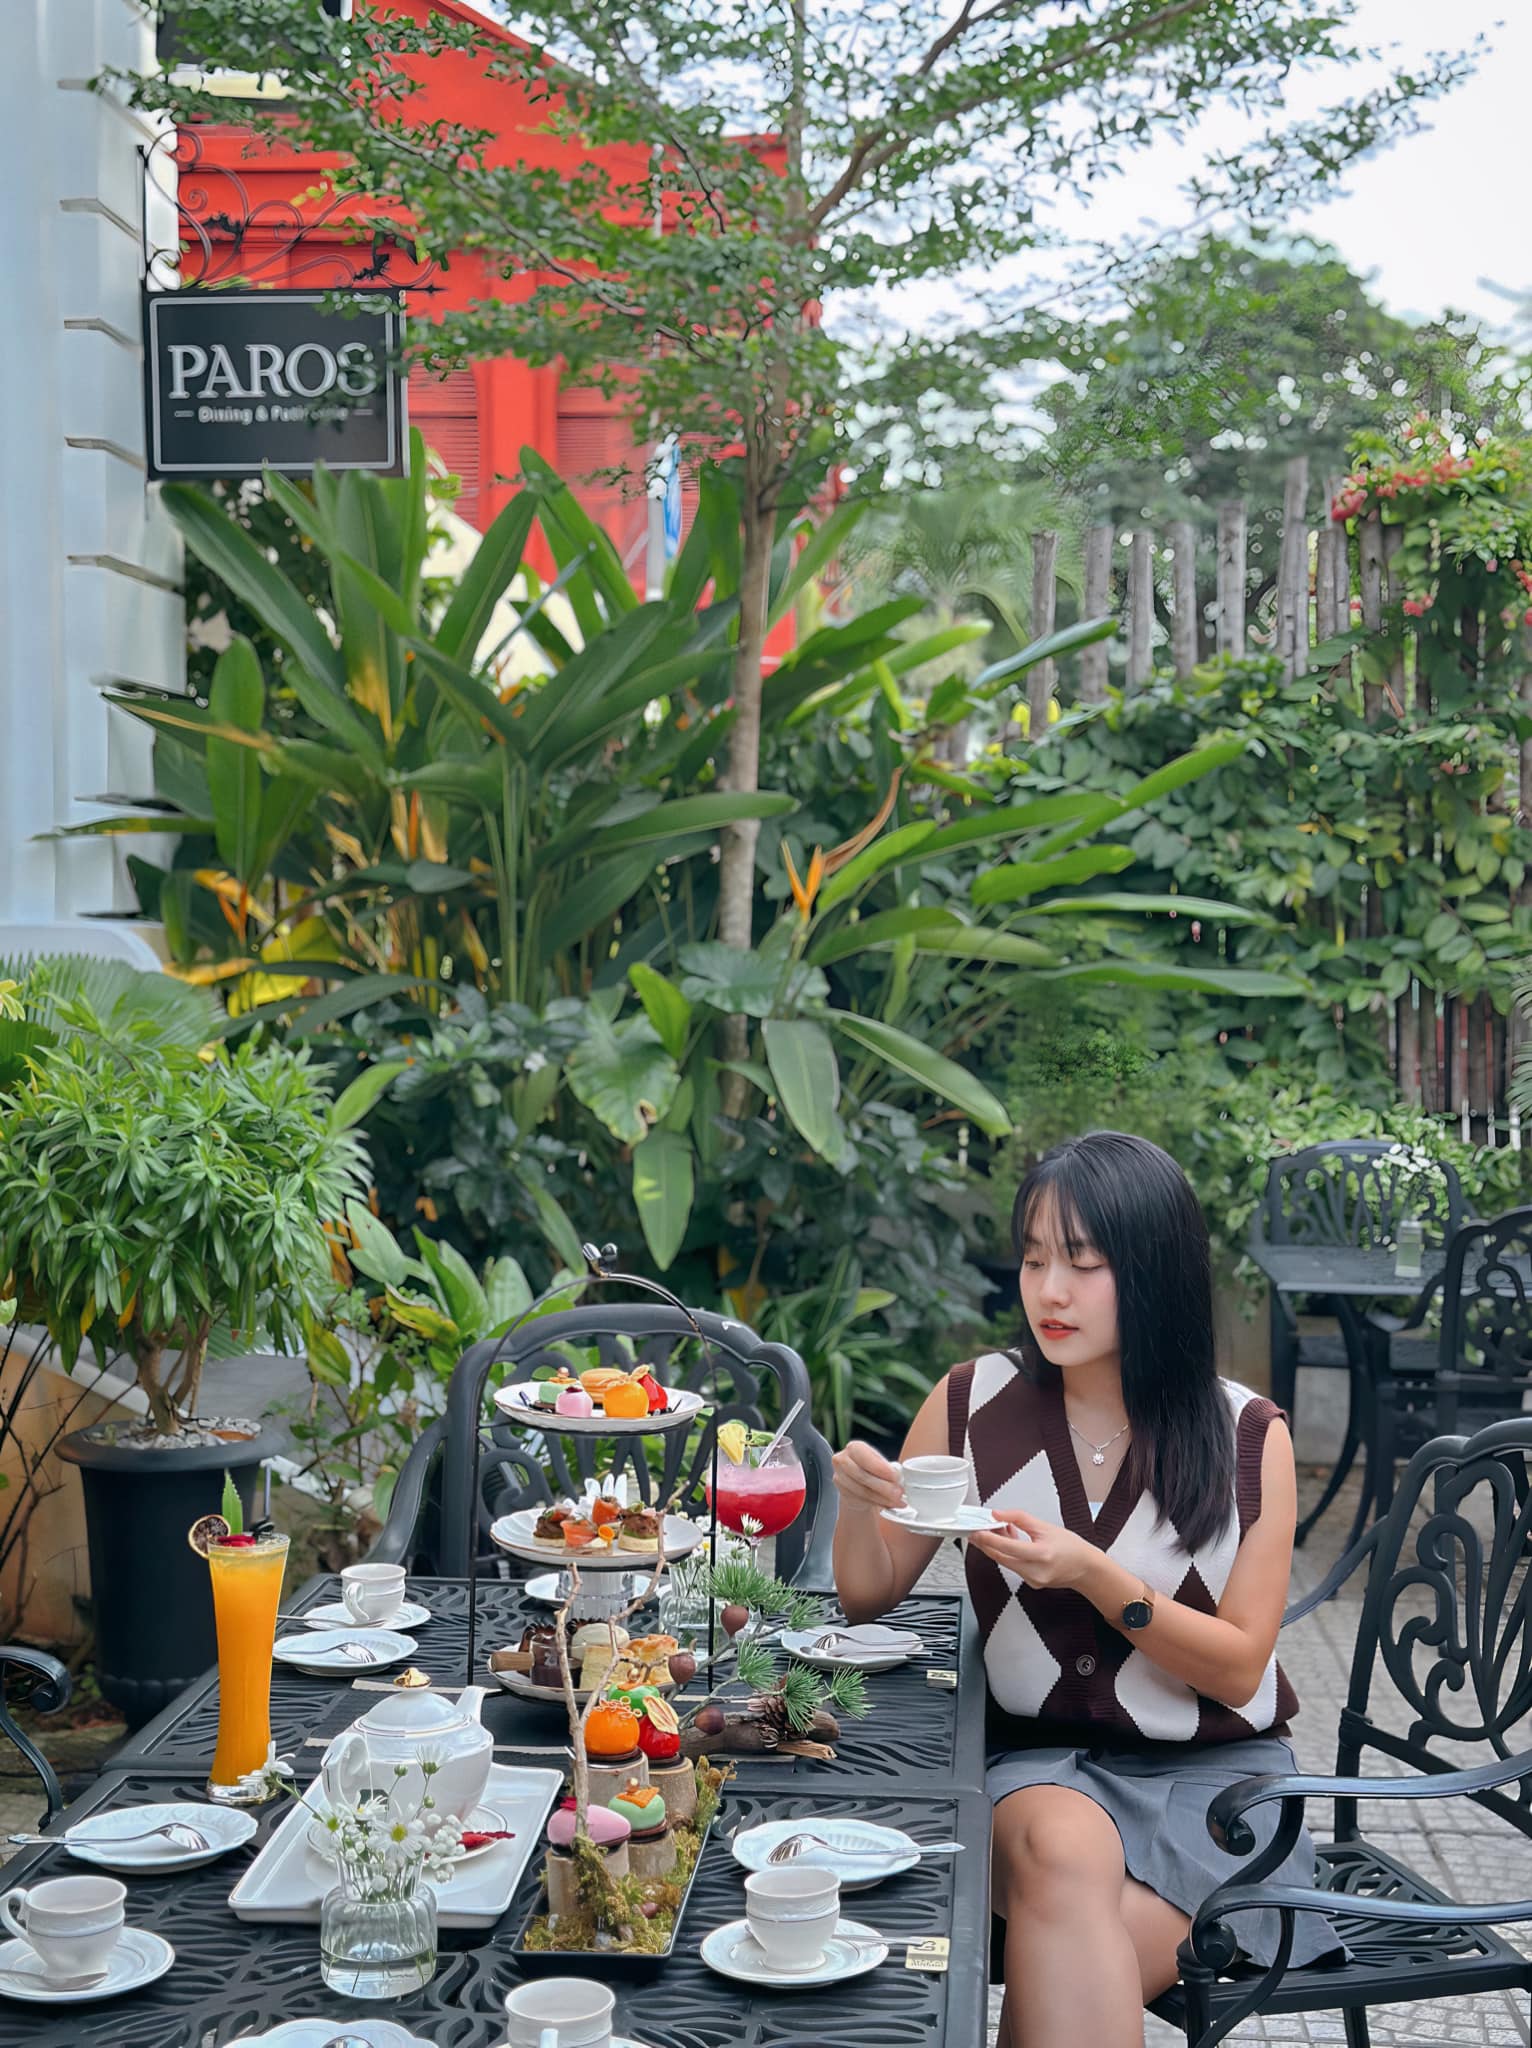 Tiệc trà chiều ấm áp và thư giãn tại Paros - Dining & Patisserie